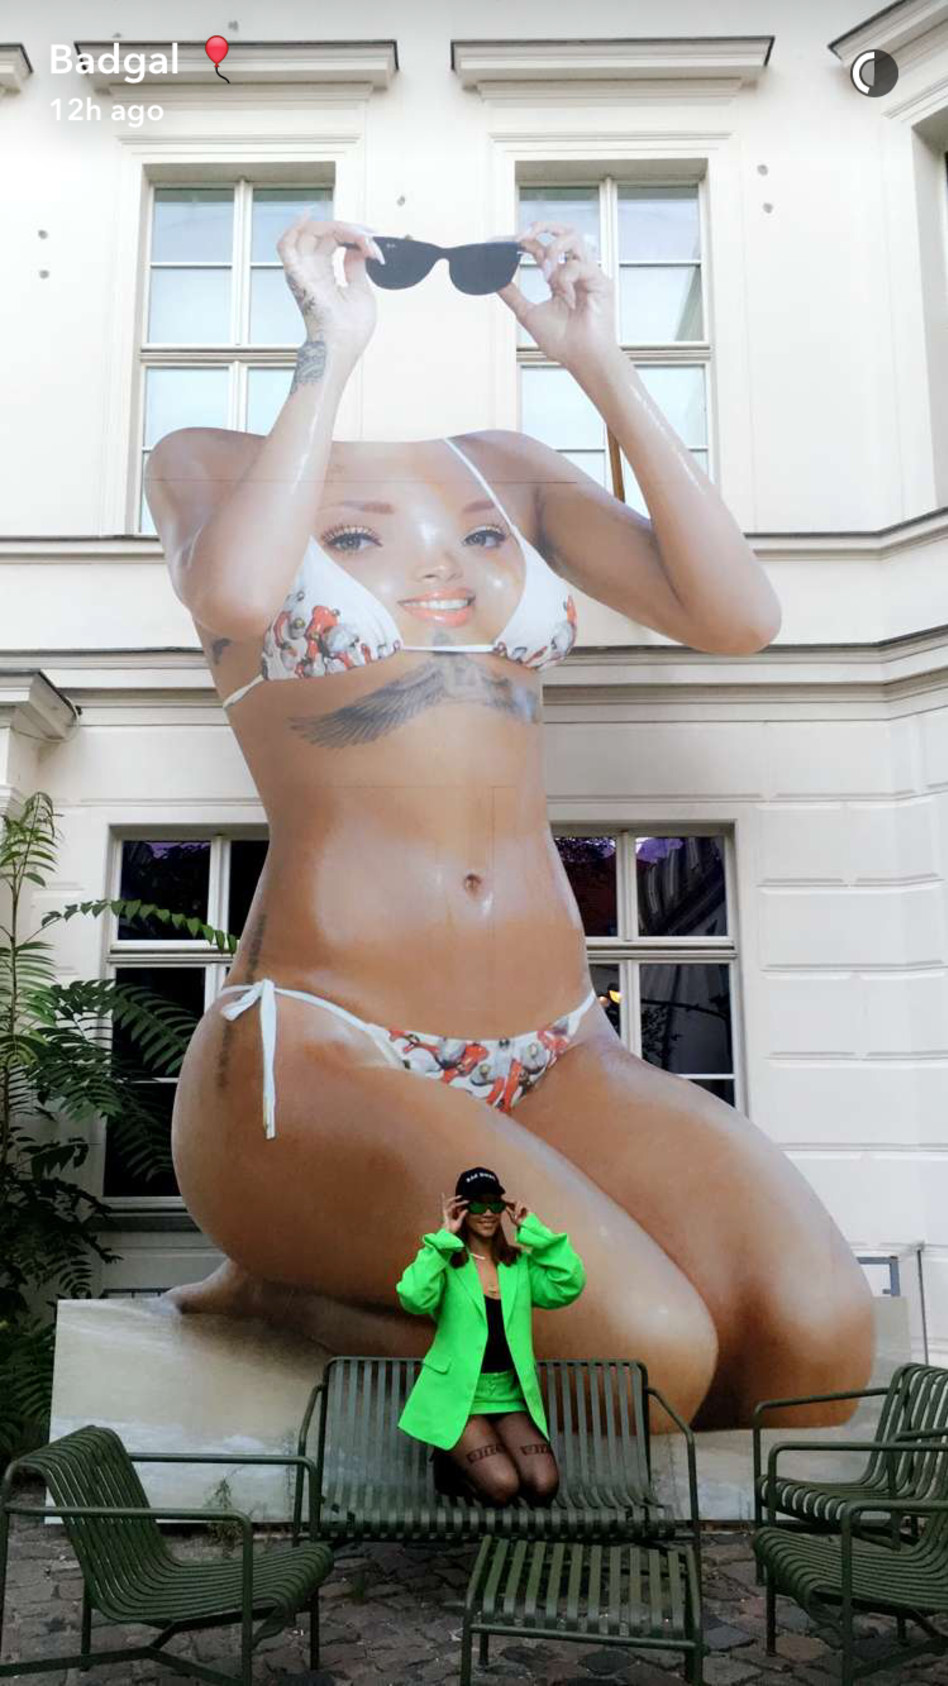 תראו אותי! אני לוהטת בענק! ריהאנה(צילום: צילום מסך סנאפצ'אט)